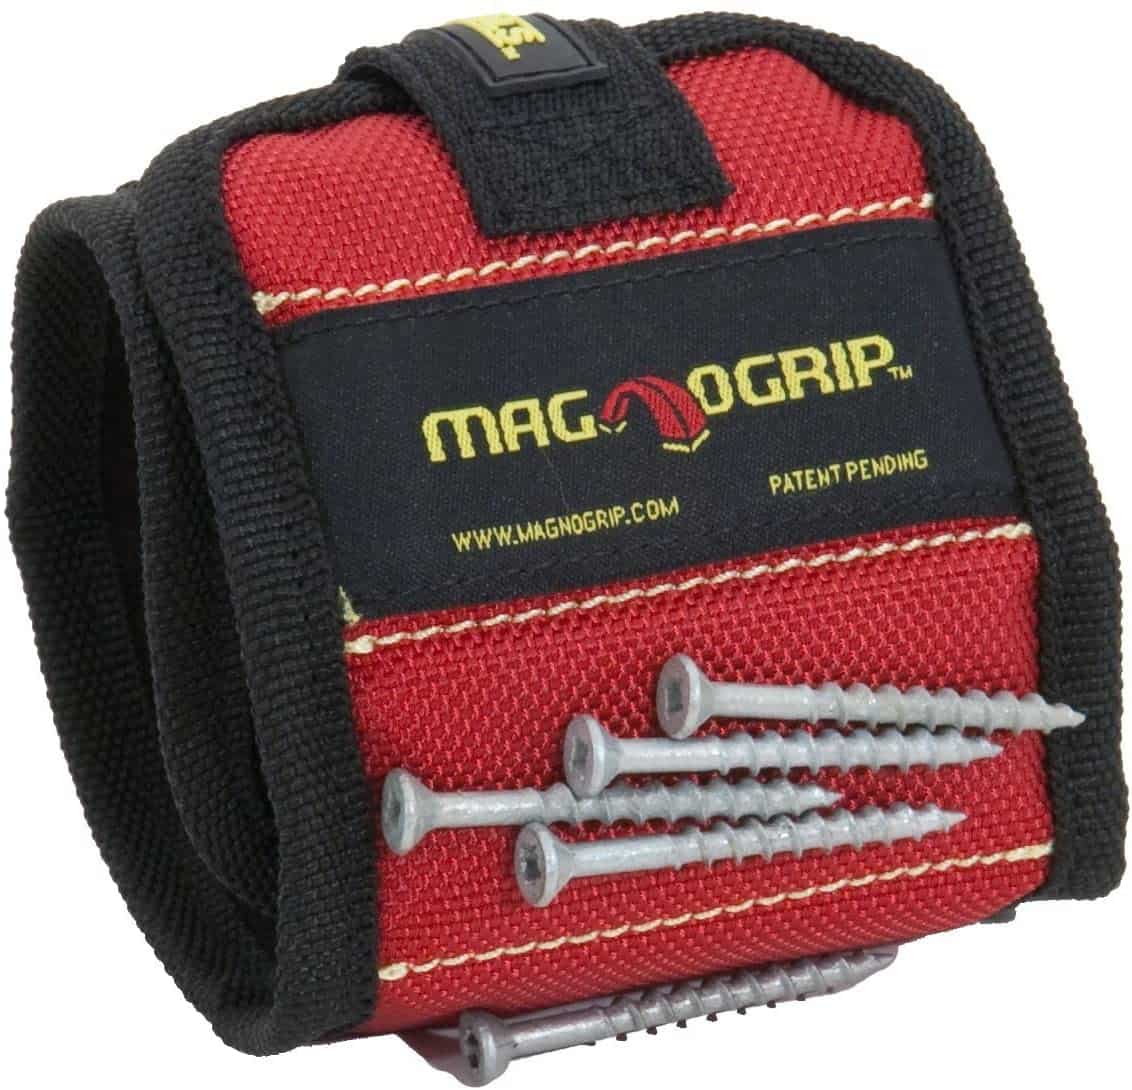 Najbolja magnetna narukvica - MagnoGrip 311-090